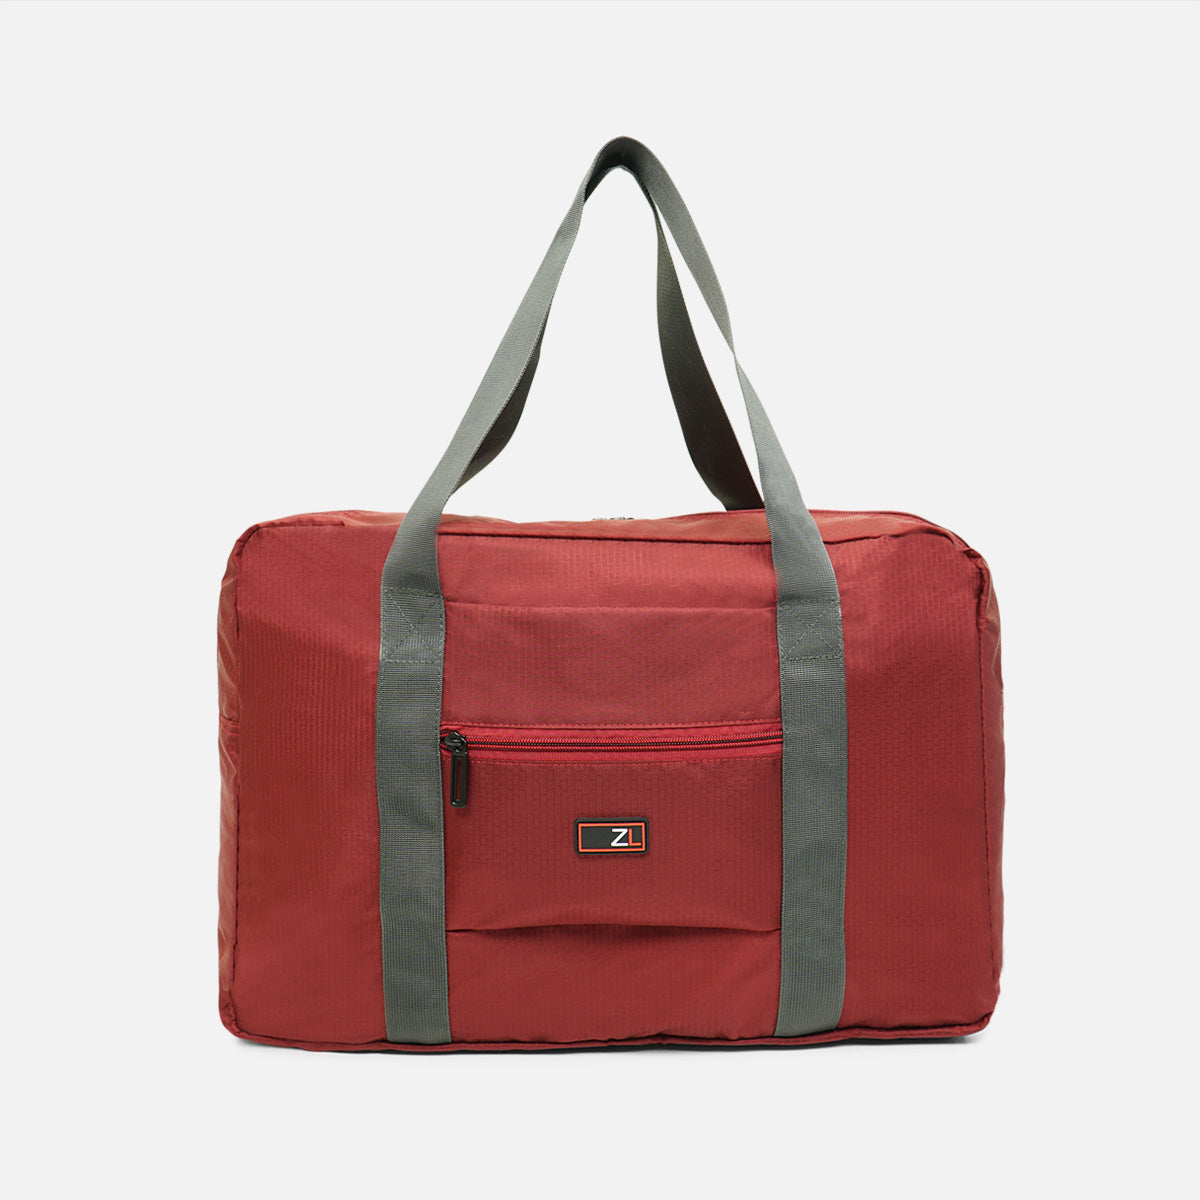 Packable Carryon Tote Bag | Duffle Bag | Travel | Weekender!Zoomlite